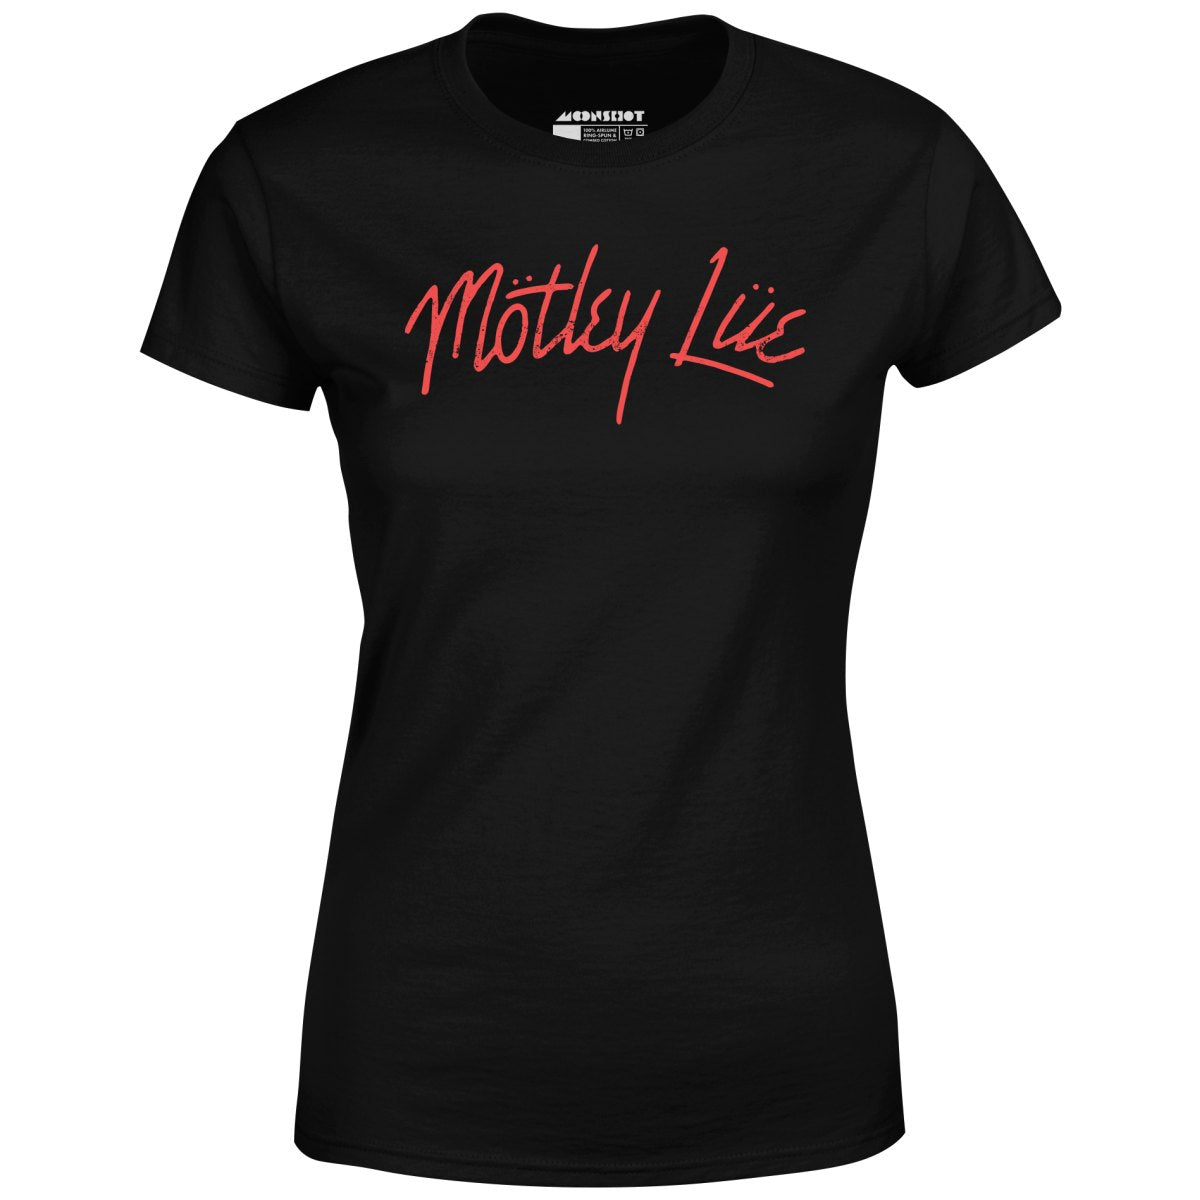 Motley Lue - Women's T-Shirt